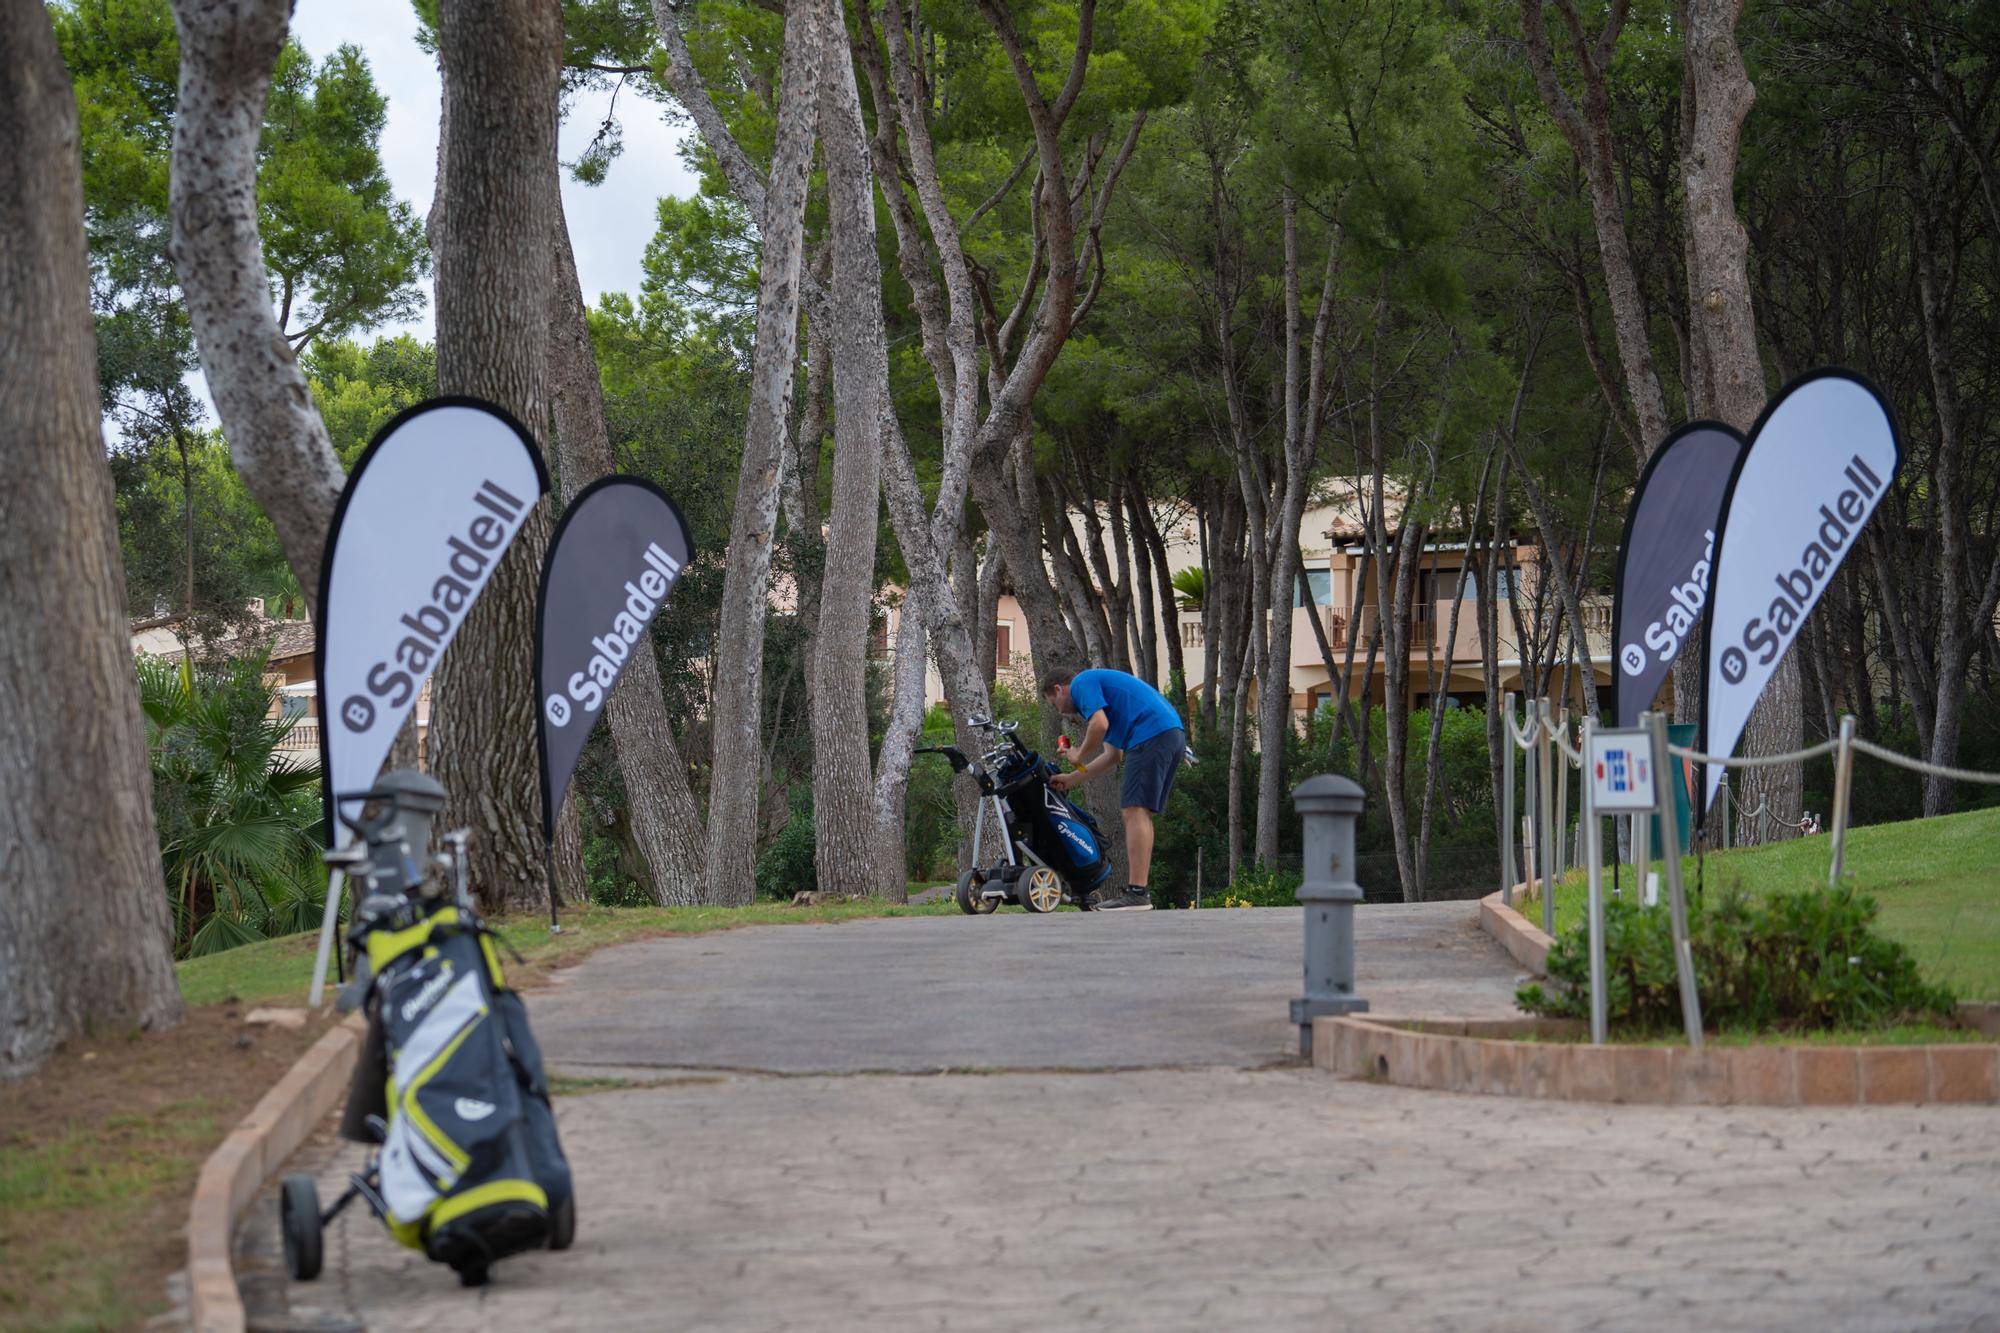 Torneo de golf Diario de Mallorca - Trofeo Banco Sabadell